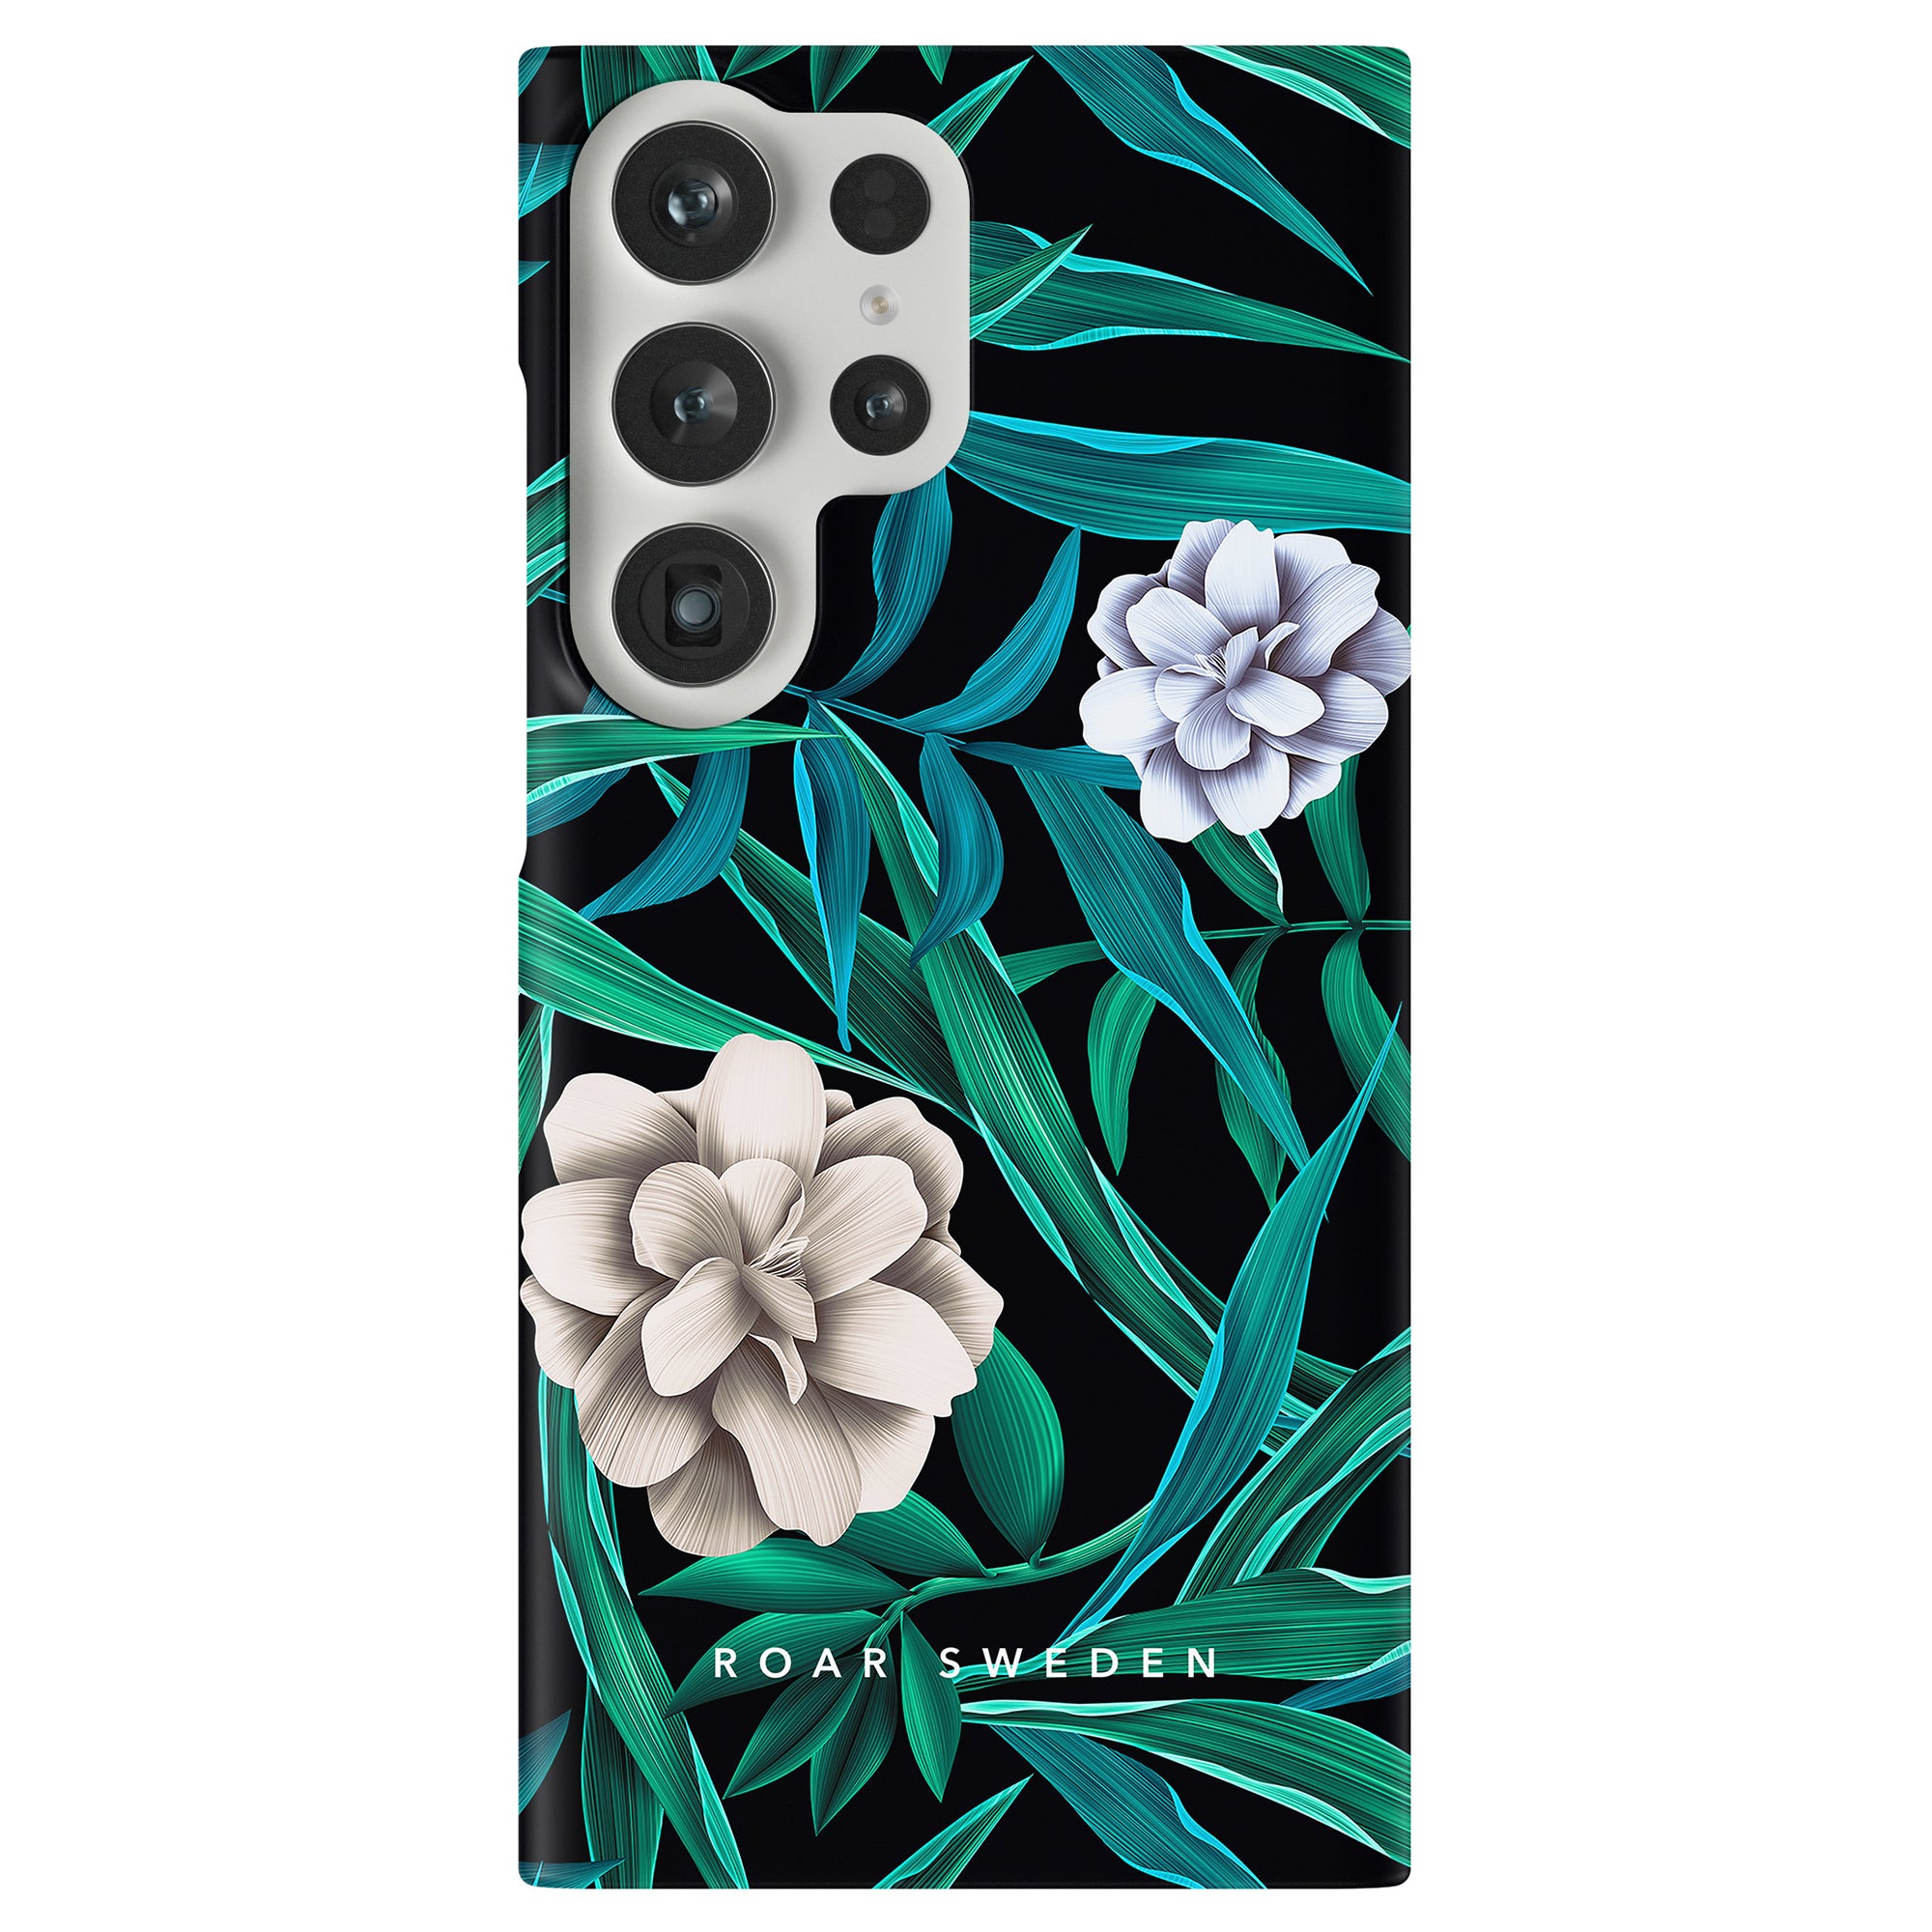 A Blossom - Tunt fodral med fina blommor och blad för ett diskret och elegant mobilskydd.